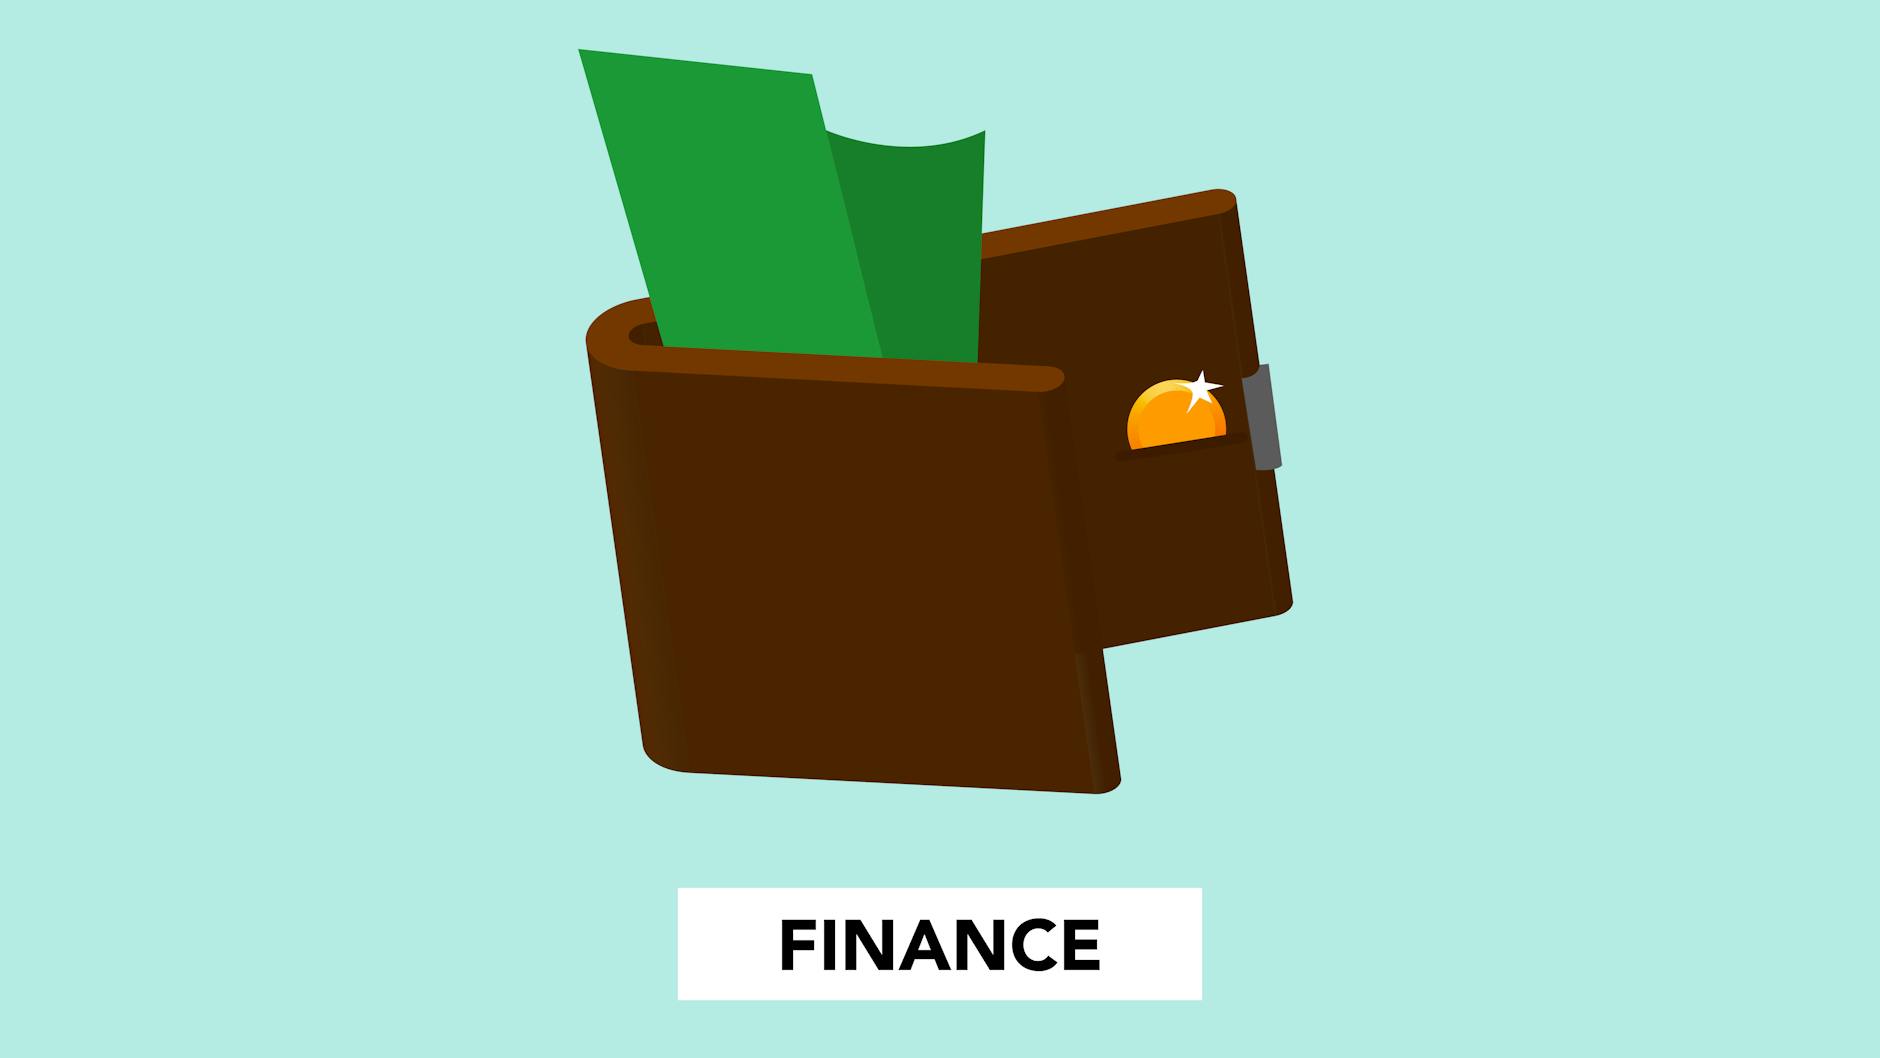 Finanzplanung und Einkaufstipps: So sparen Sie clever im Haushalt